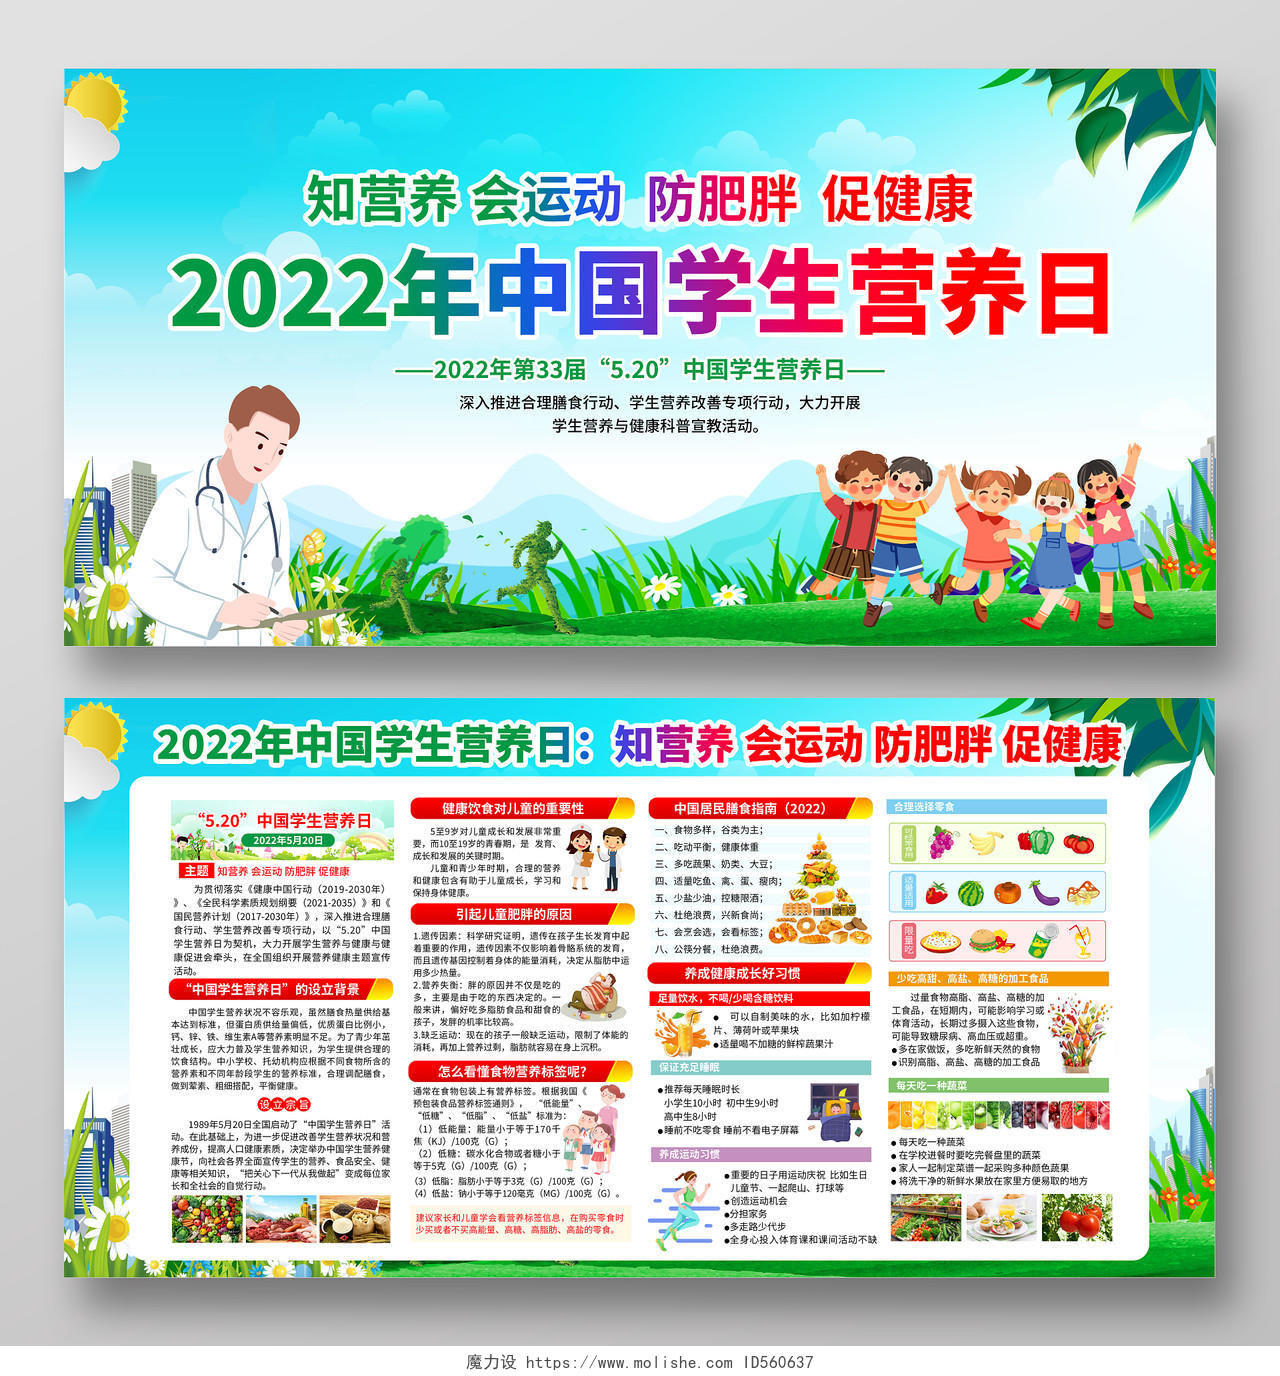 蓝色清新风格2022年中国学生营养日宣传栏